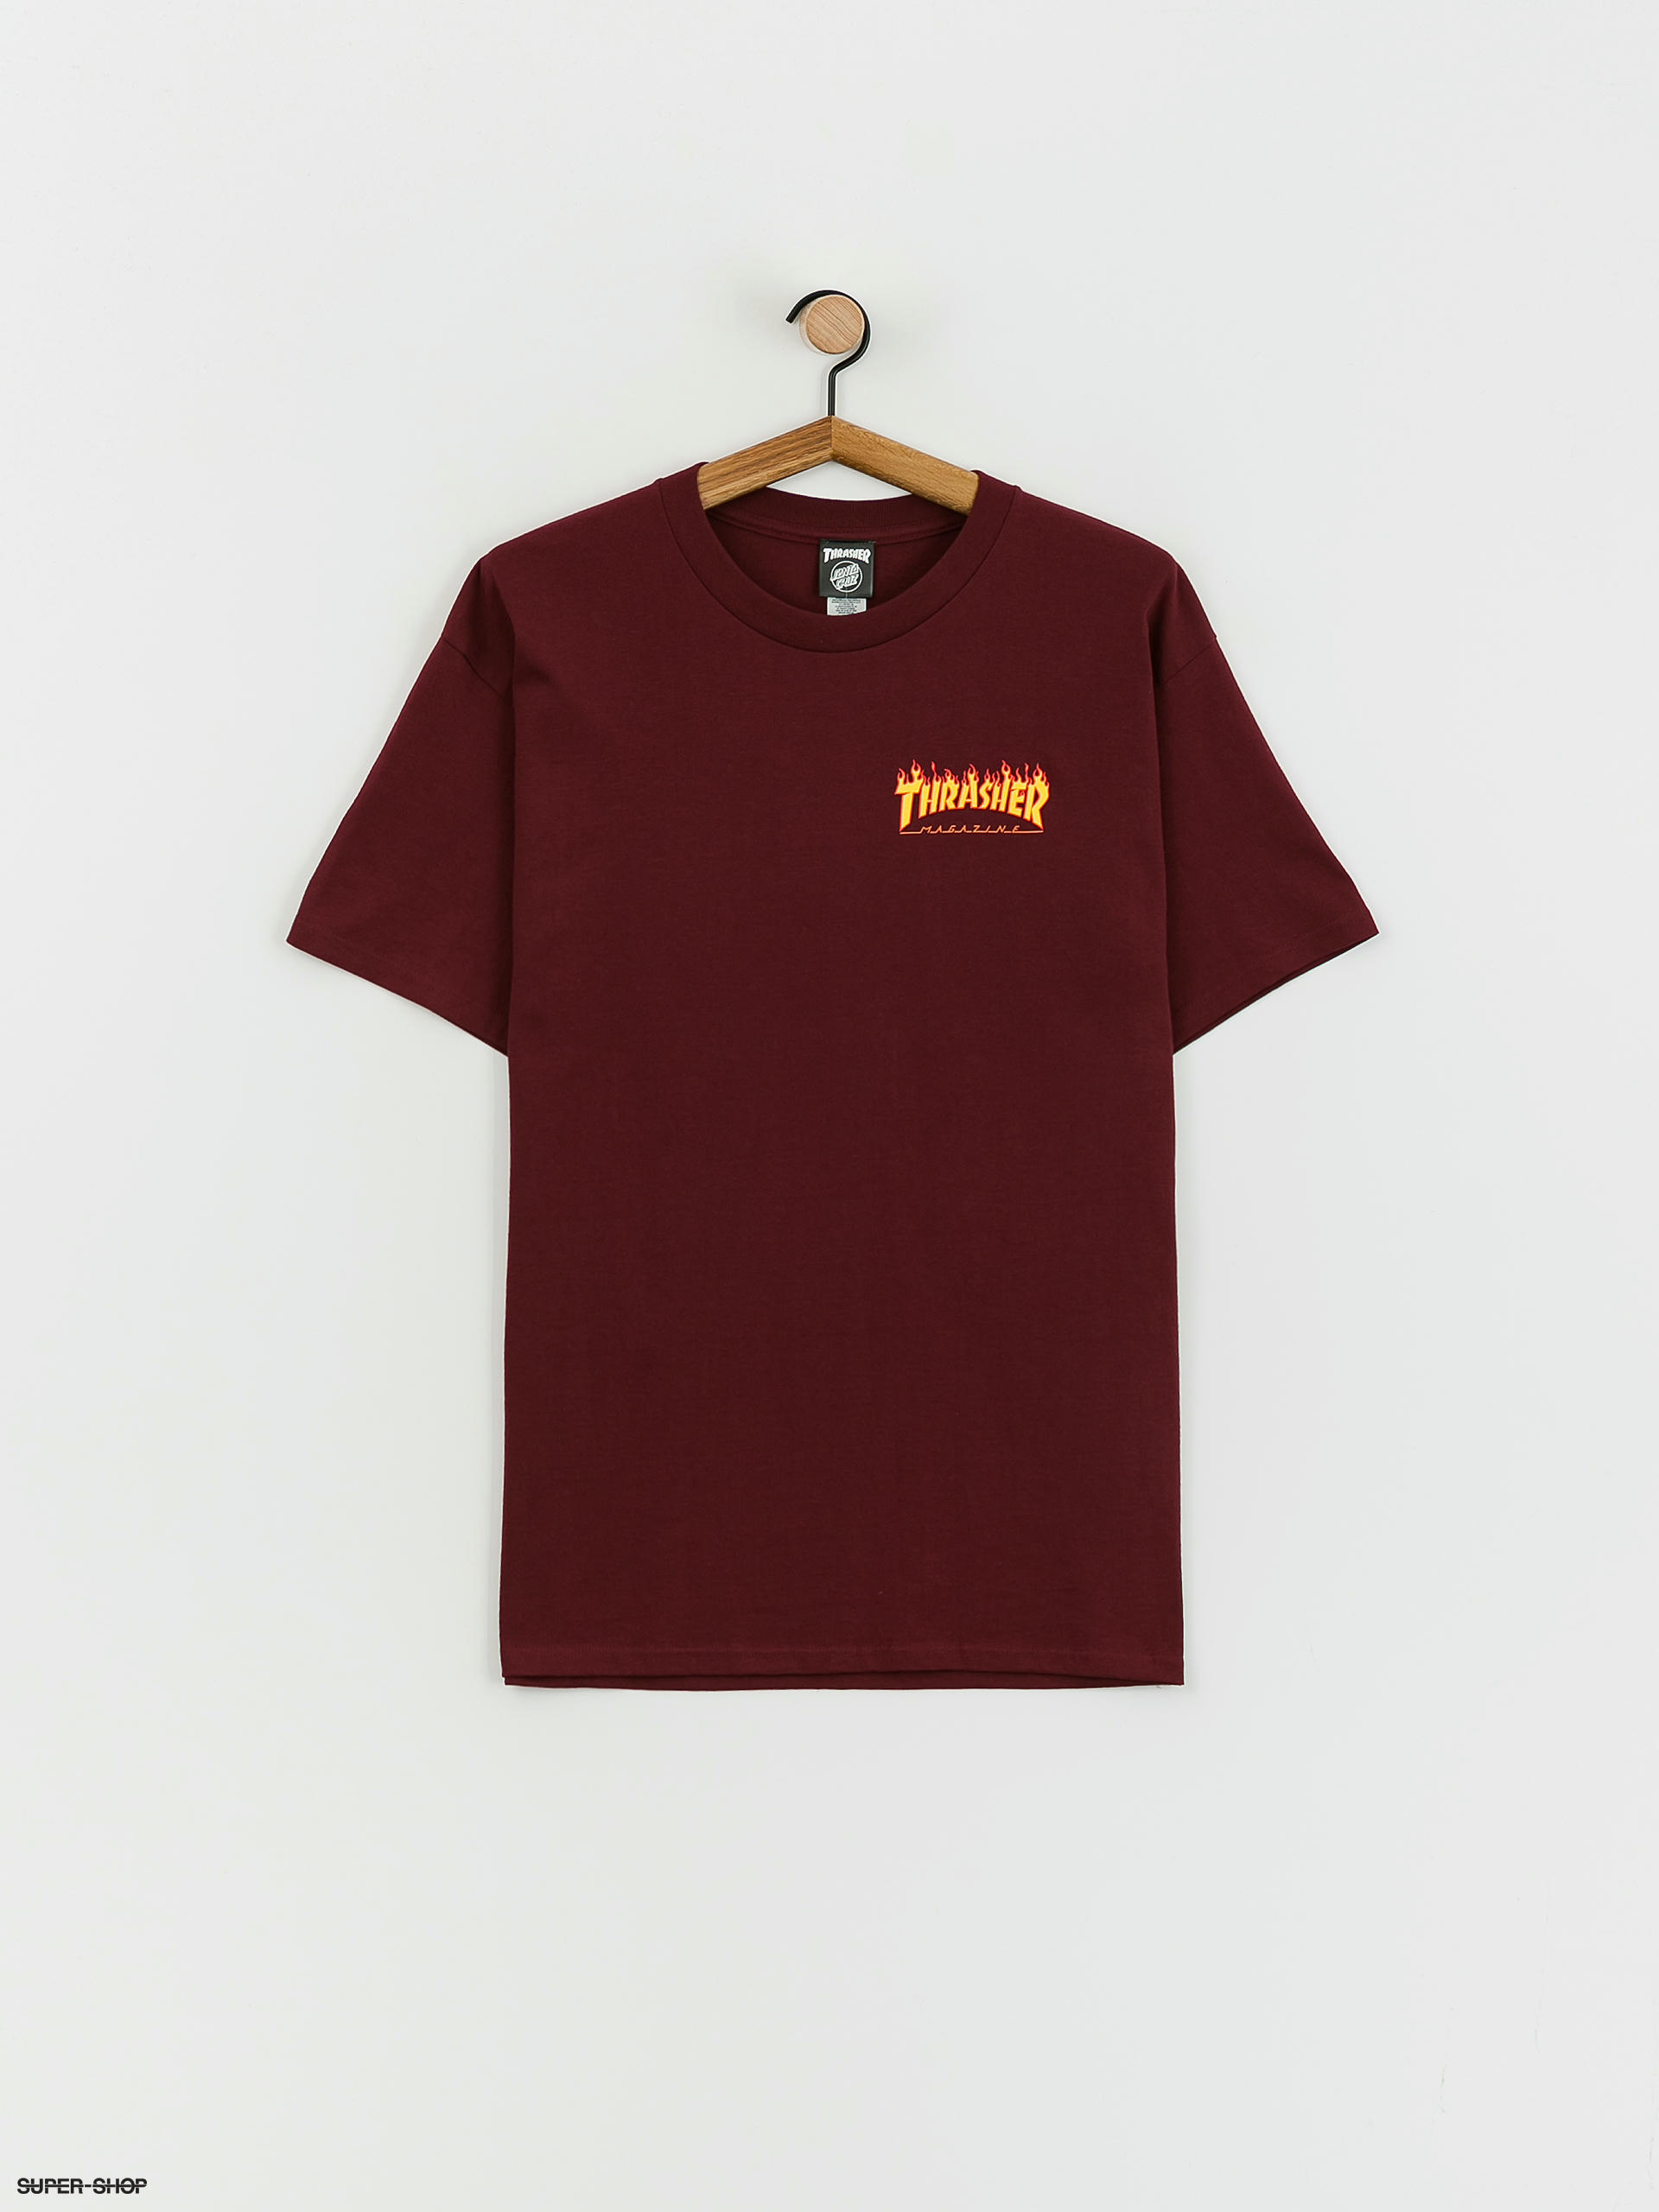 Flame T-shirt Cruz Thrasher Santa X (burgundy) Dot